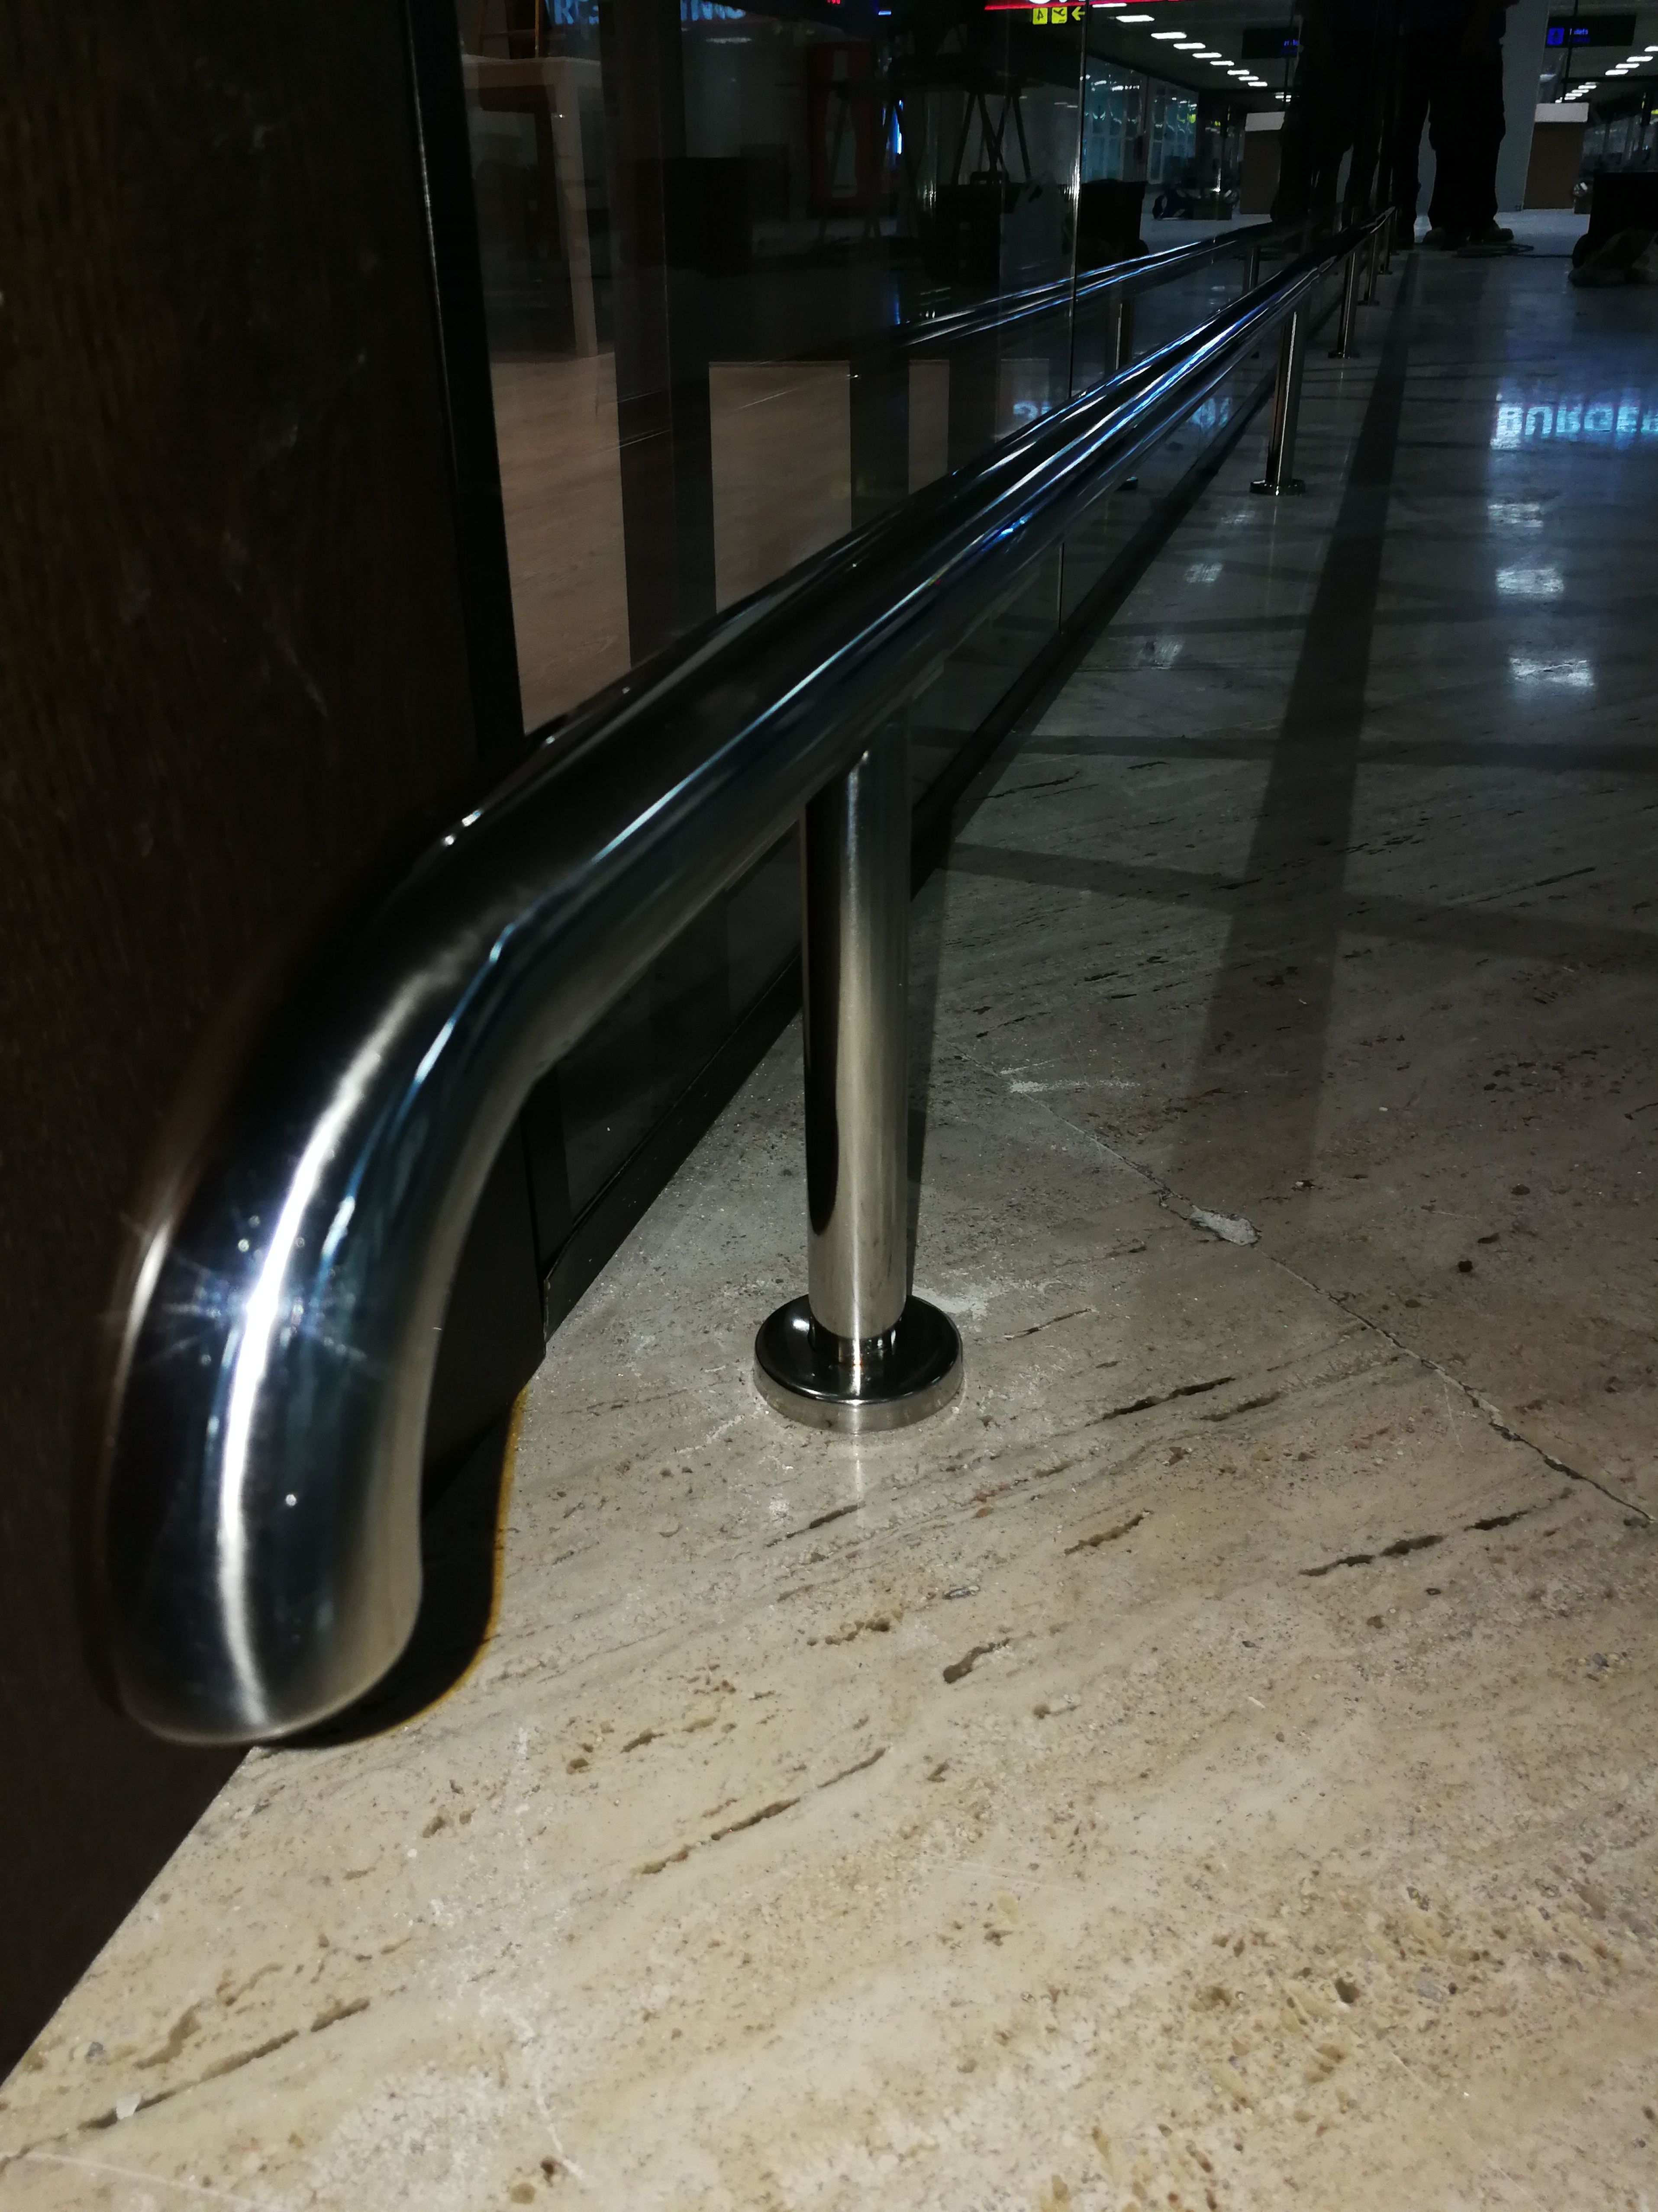 Paragolpes de acero inoxidable para sala vip del aeropuerto de Sevilla.